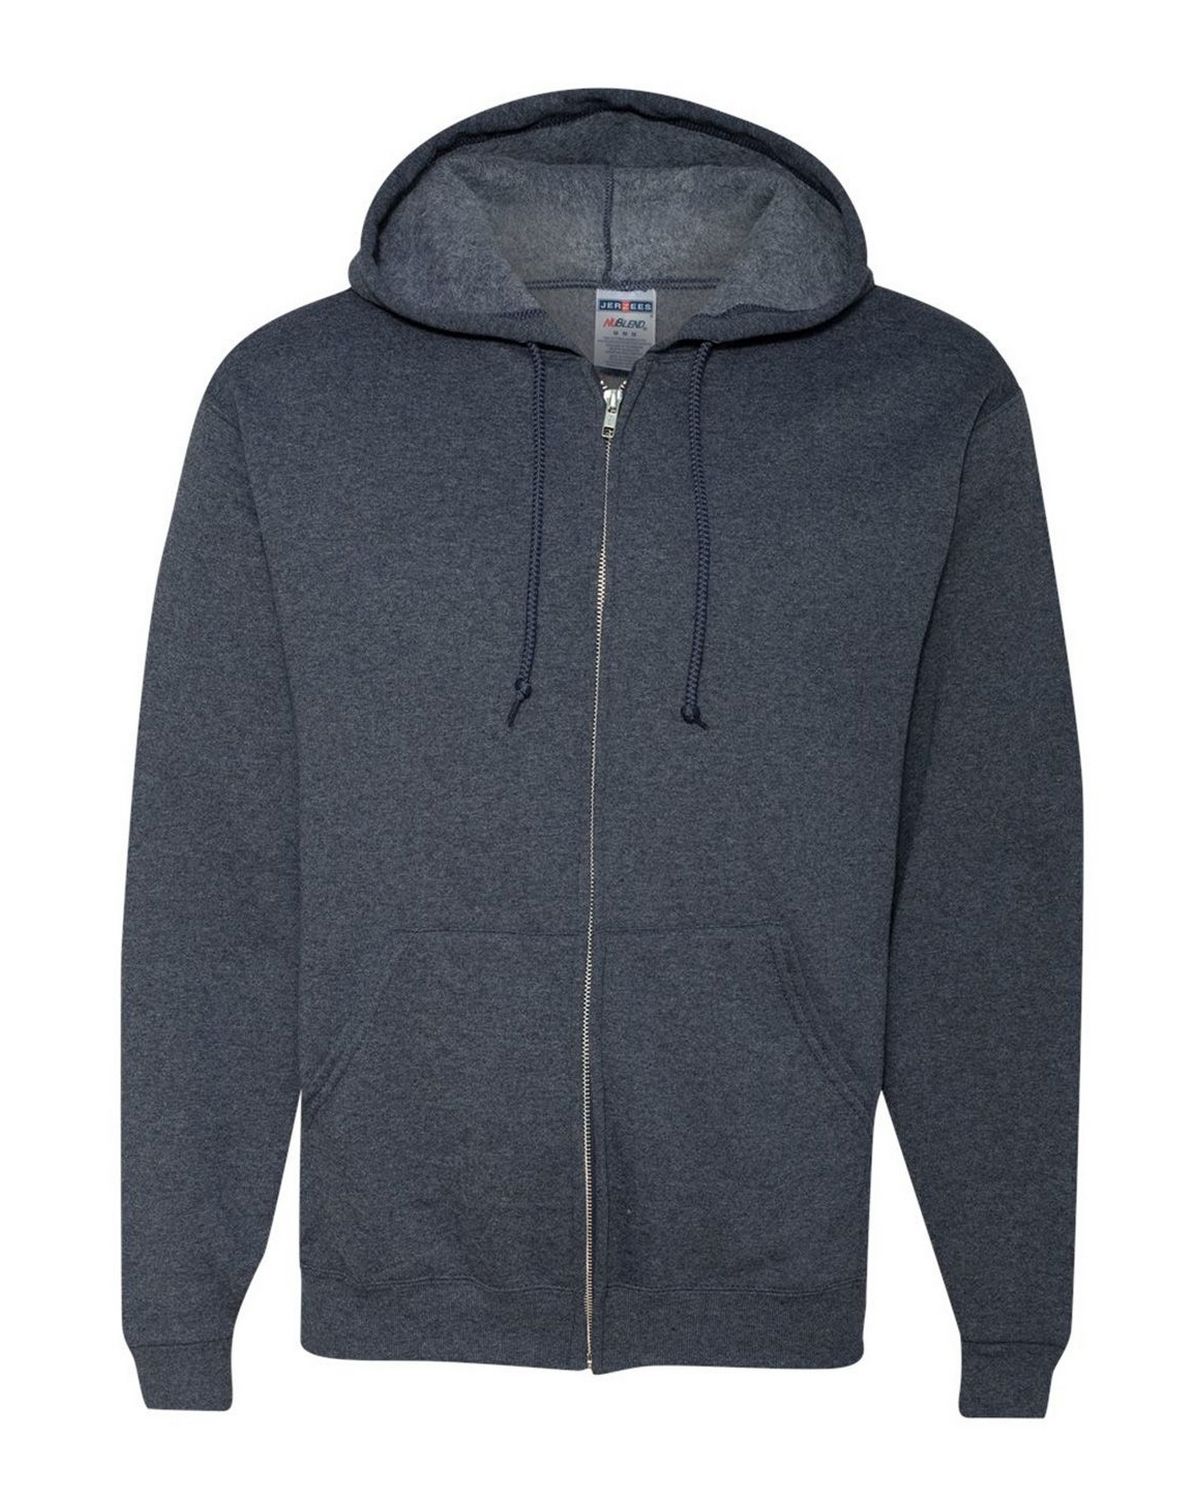 Jerzees 993MR NuBlend Full-Zip Hooded Sweatshirt